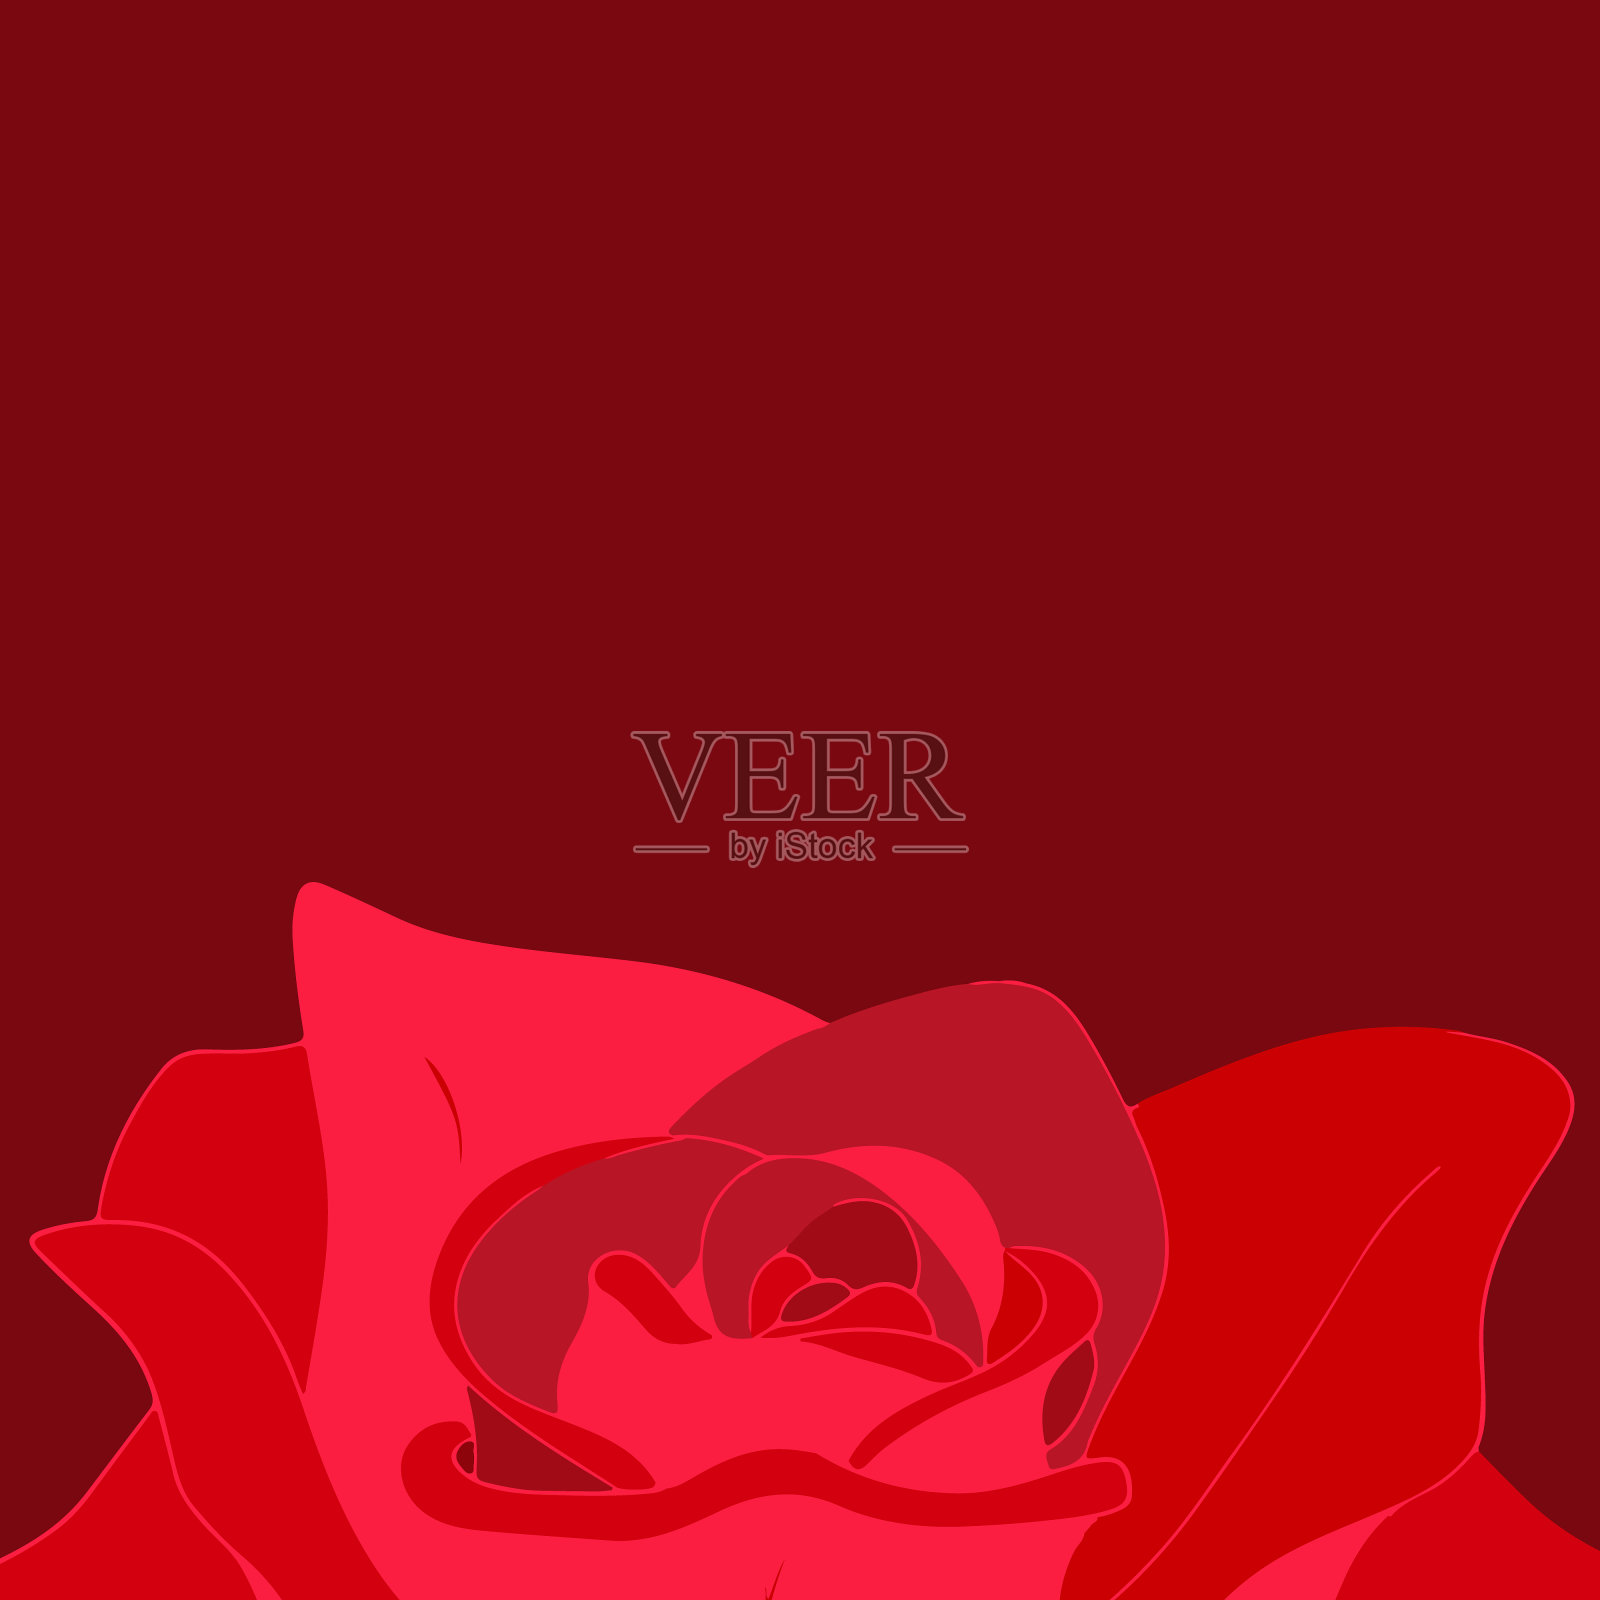 酒红色背景下的红玫瑰花蕾。插画图片素材